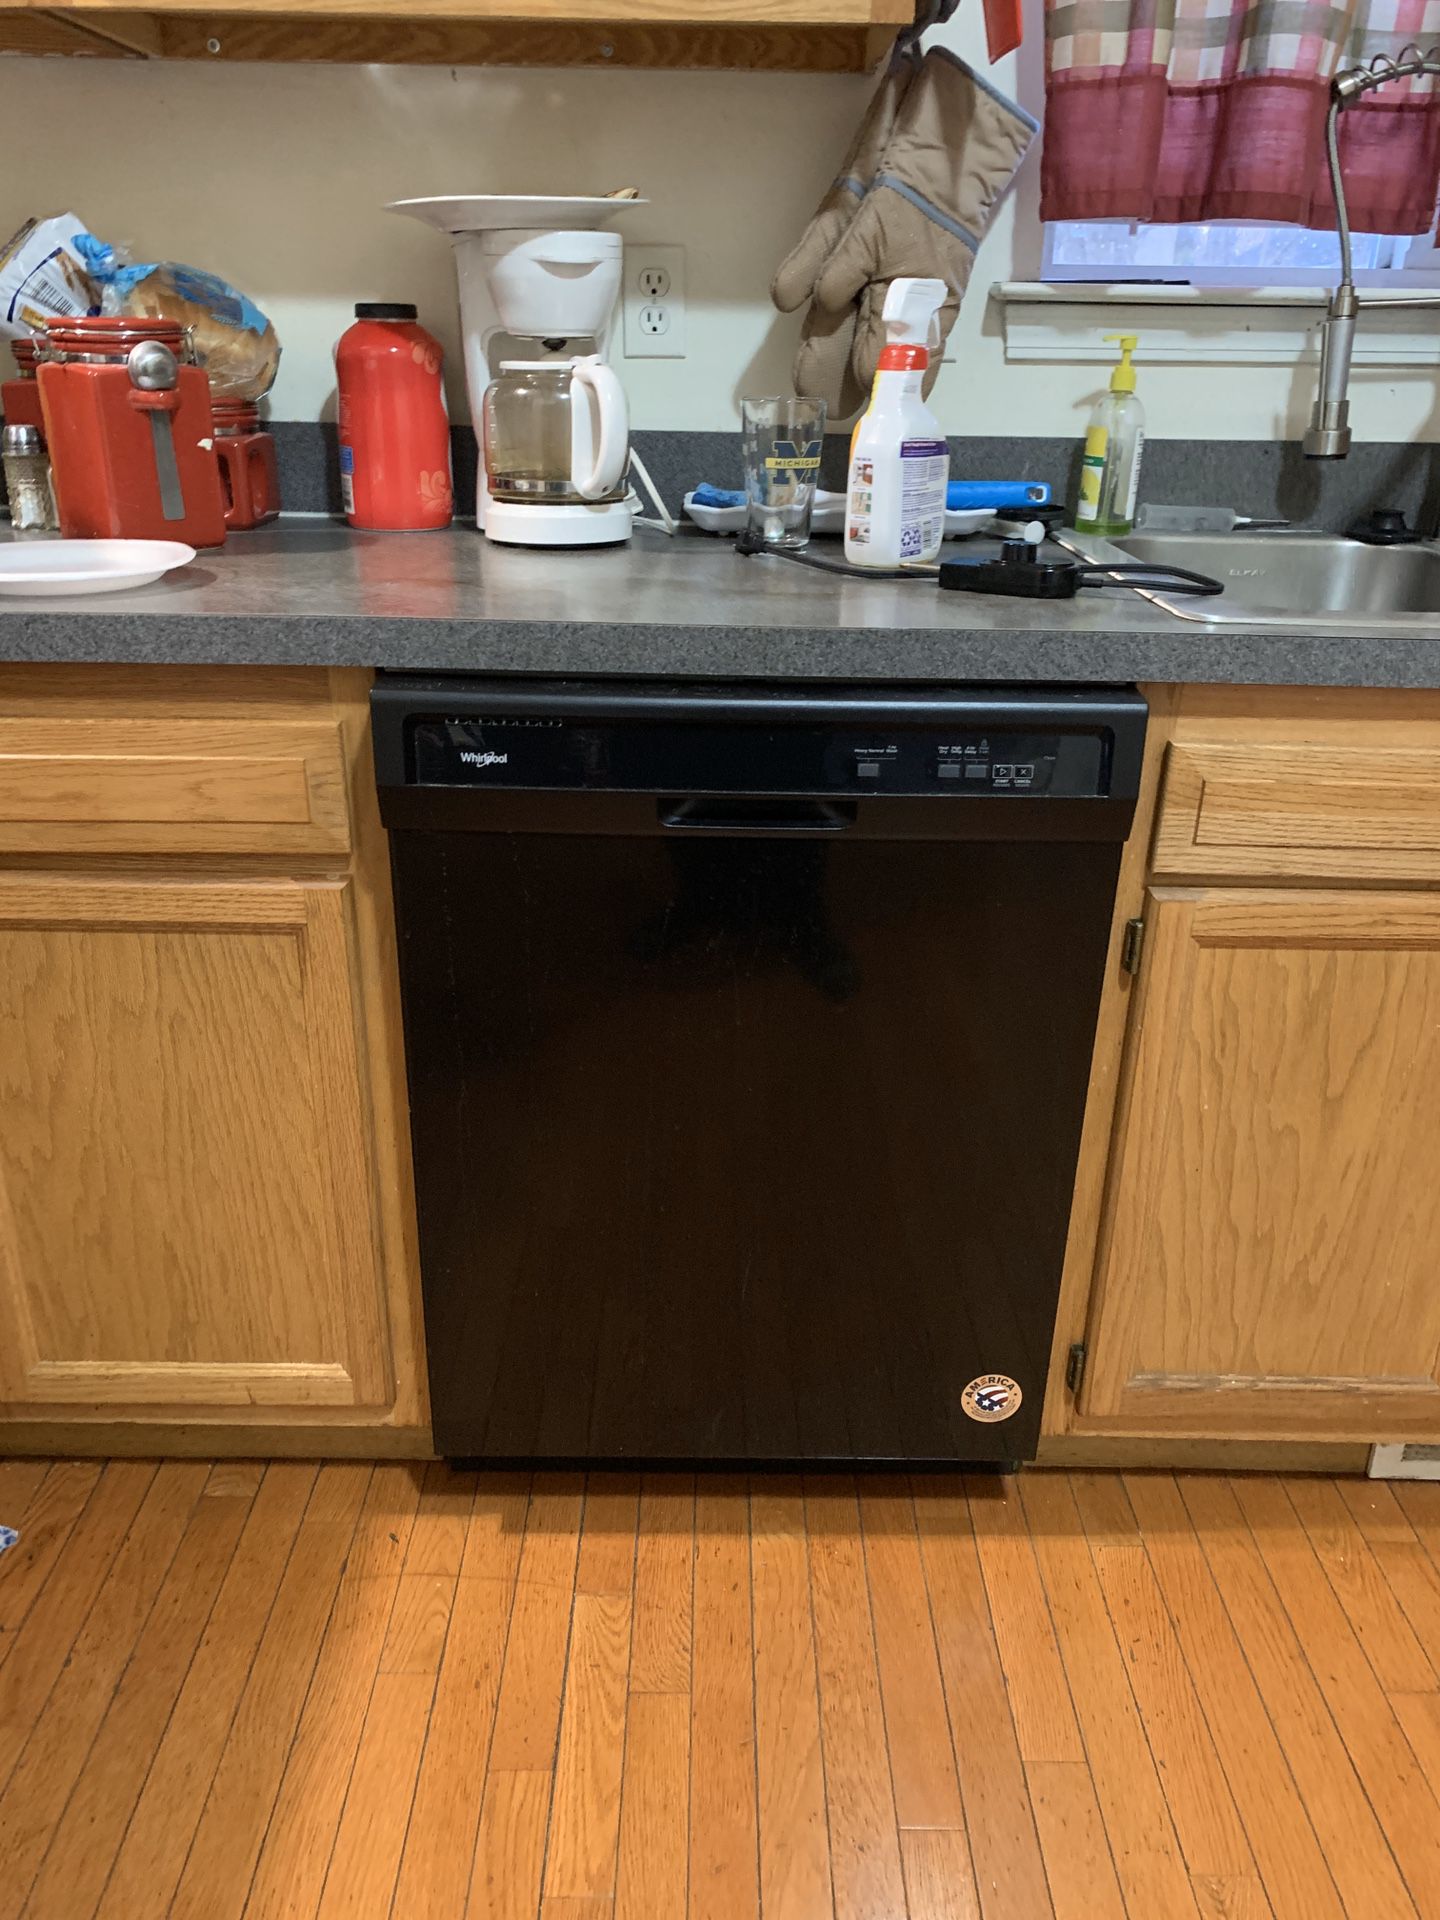 NEW Whirlpool Dishwasher w/ Warranty